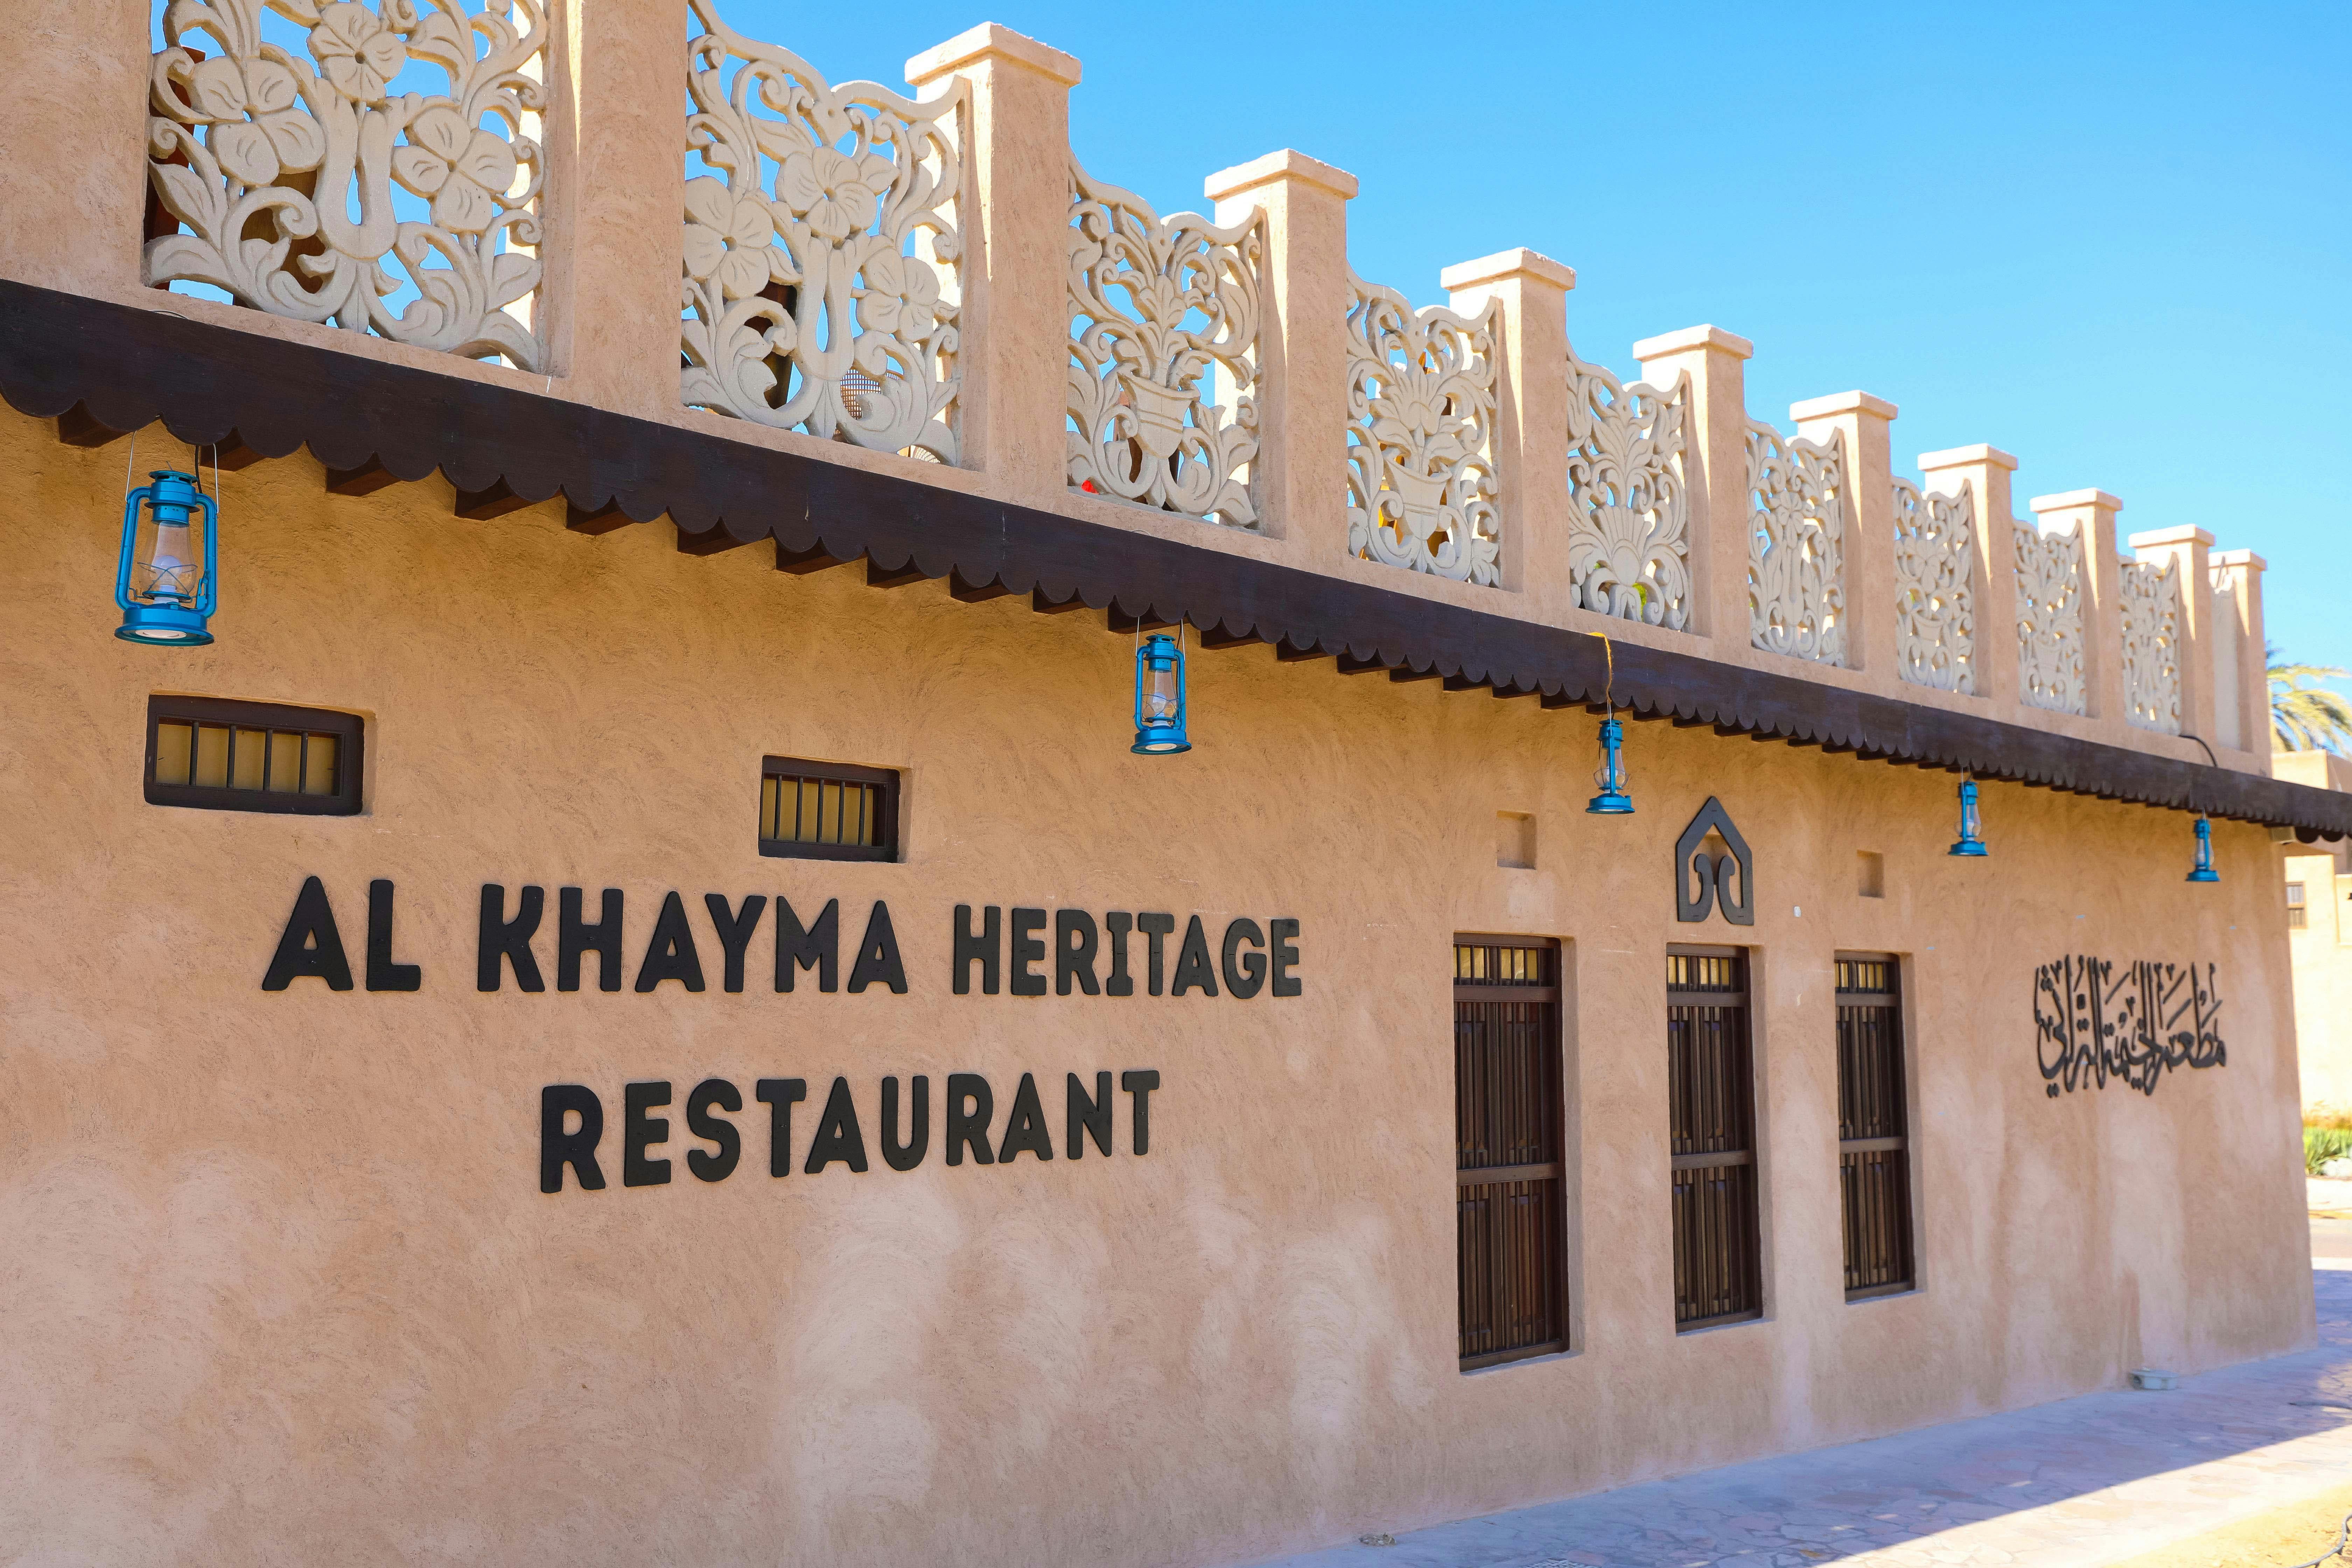 Etniczna kuchnia emiracka w Al Khayma Heritage House